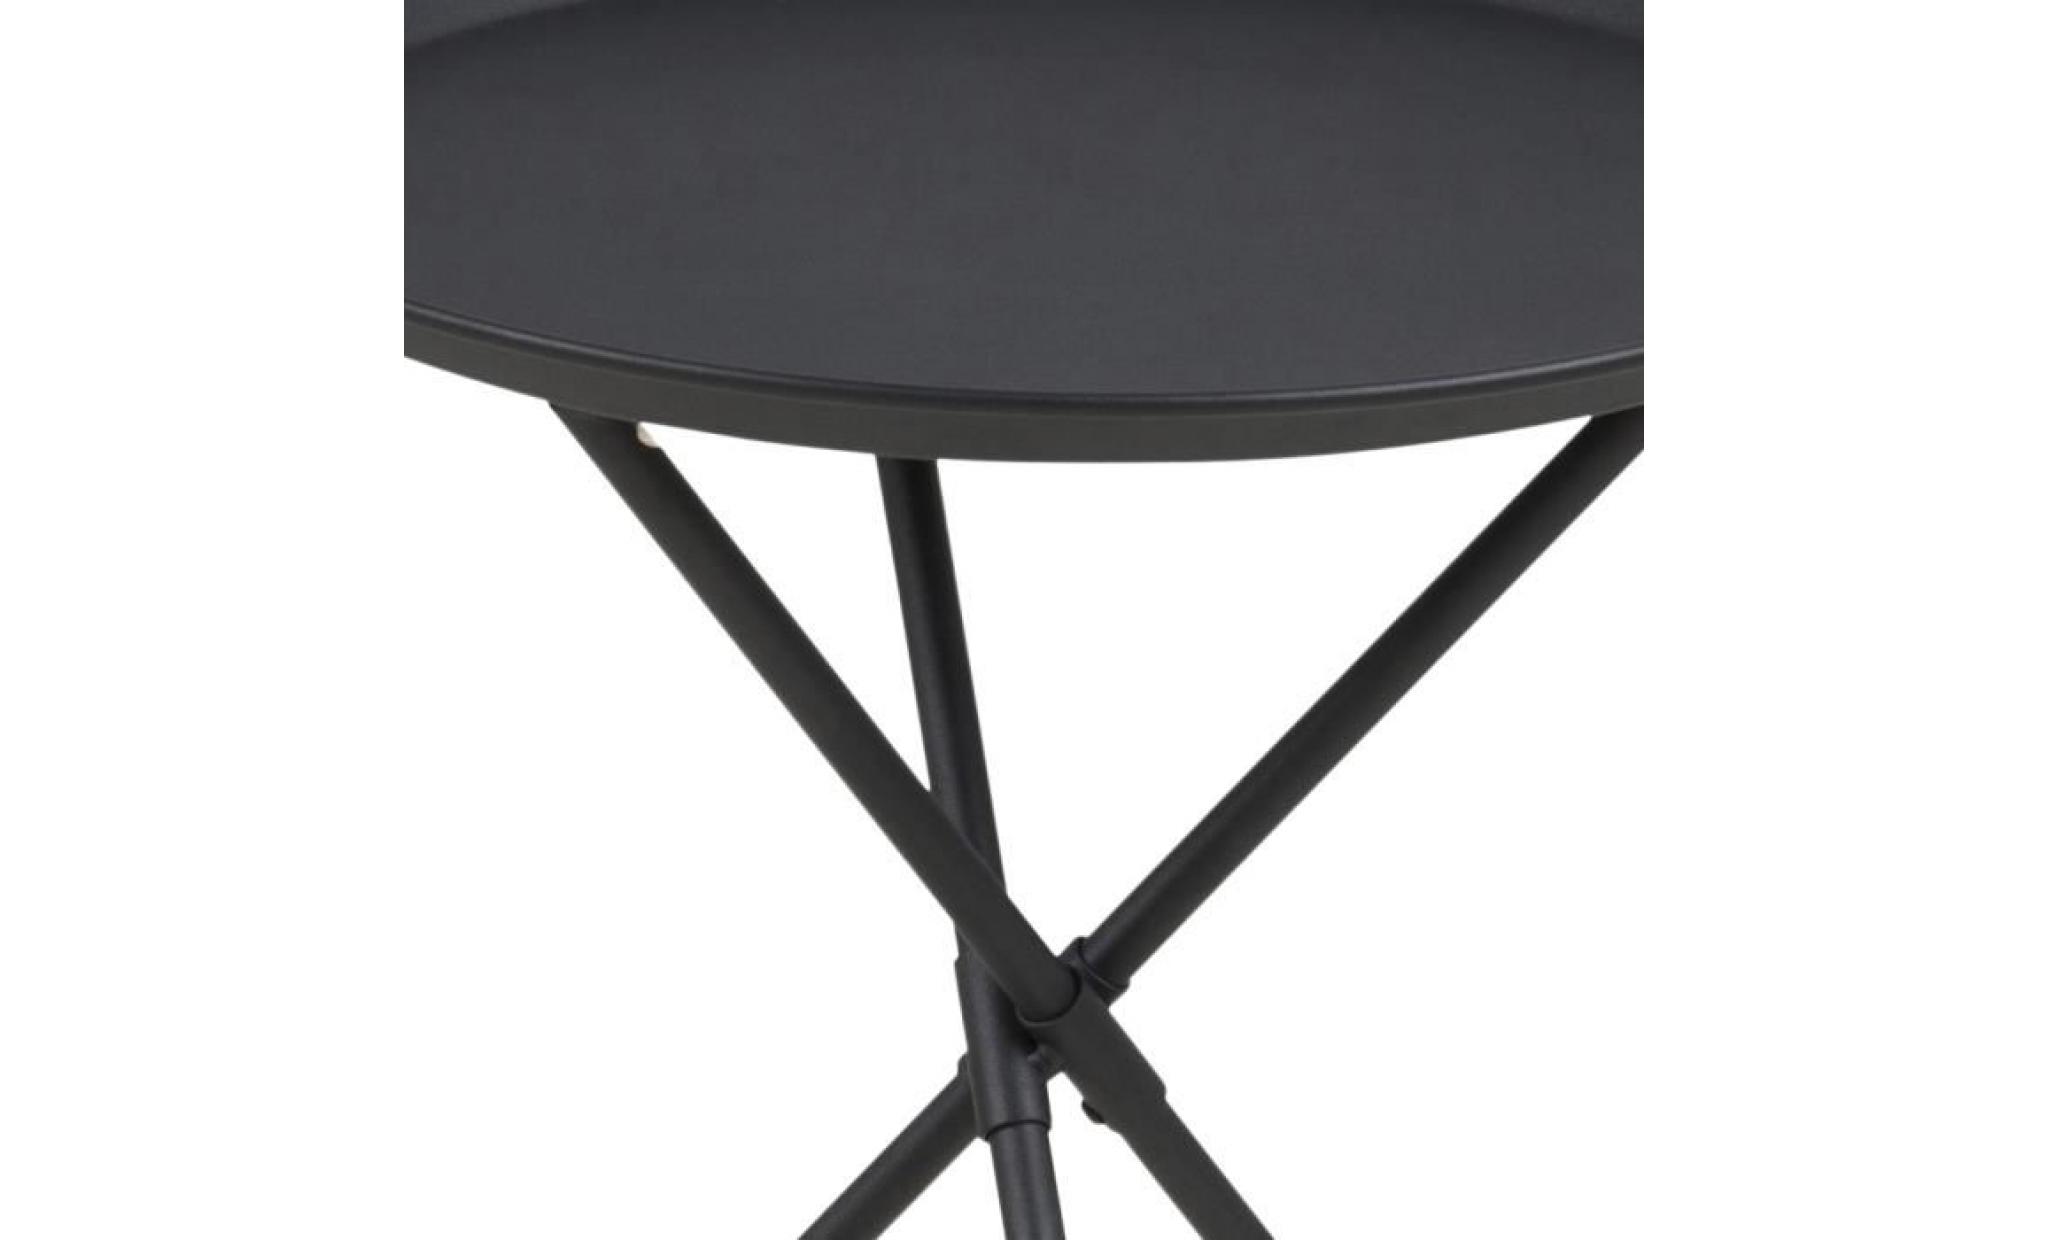 table basse / table d’appoint   sparky   38,5 cm   noir   métal revêtu de poudre   style scandinave   style industriel pas cher